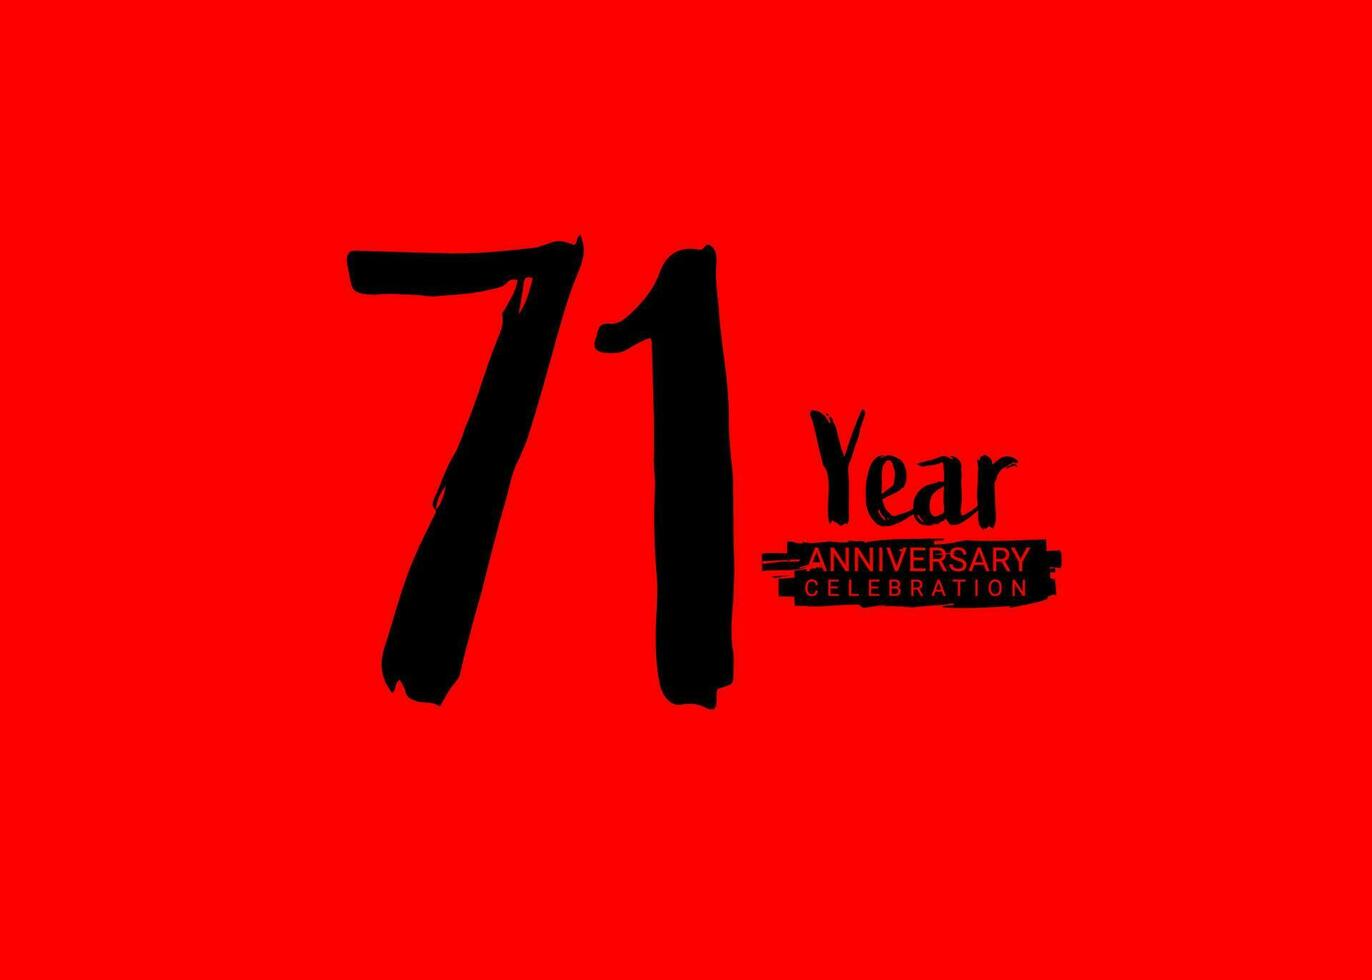 71 år årsdag firande logotyp på röd bakgrund, 71 siffra logotyp design, 71:a födelsedag logotyp, logotyp årsdag, vektor årsdag för firande, affisch, inbjudan kort